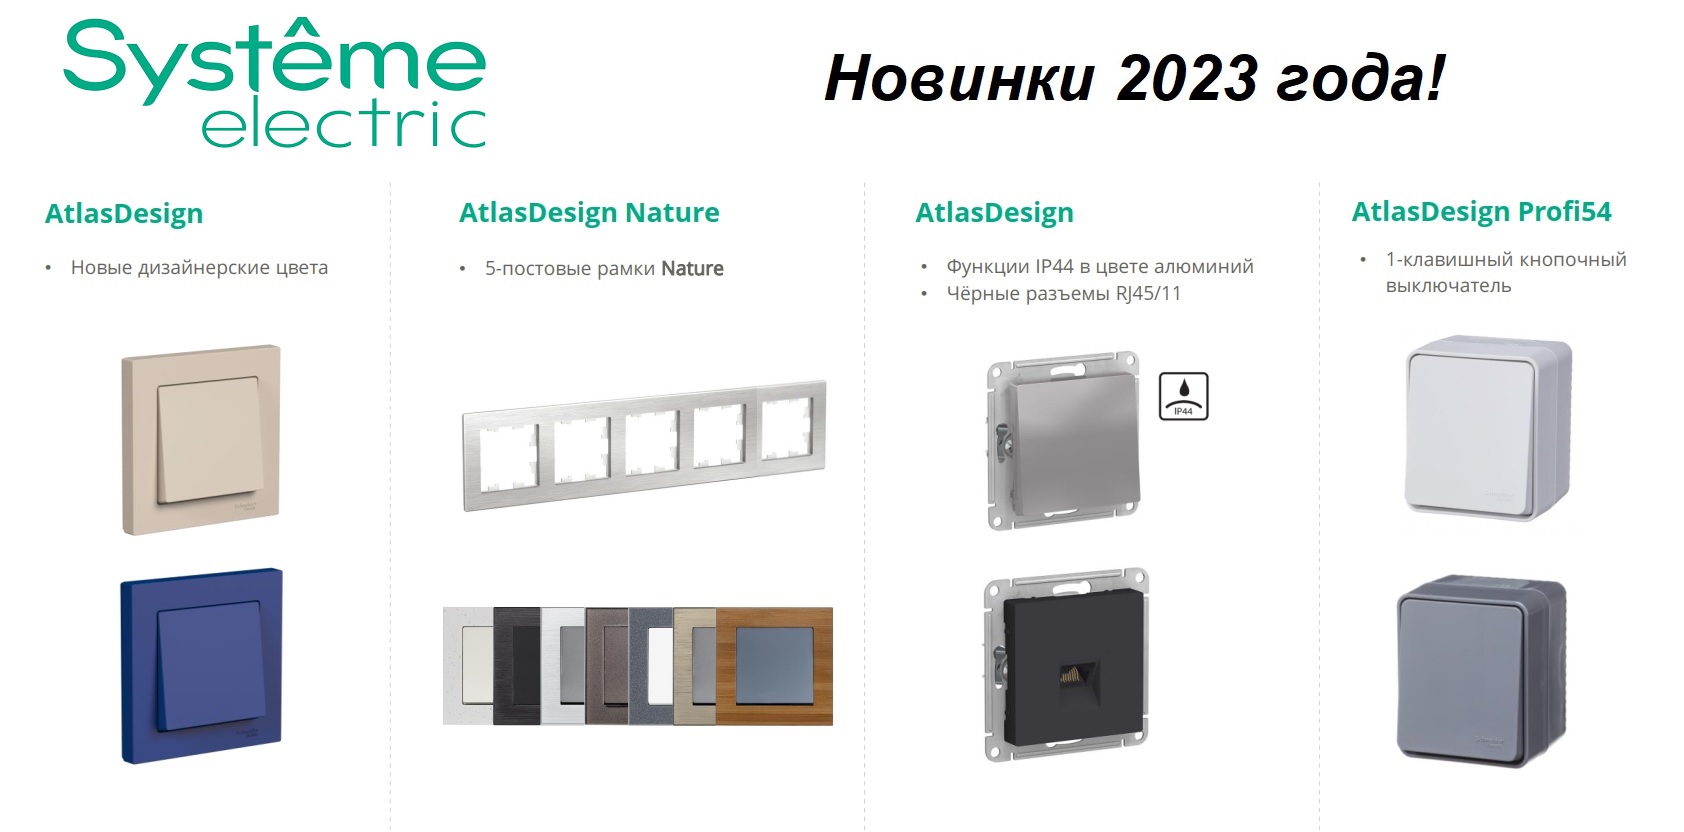 Встречайте новинки 2023 года от Systeme Electric!